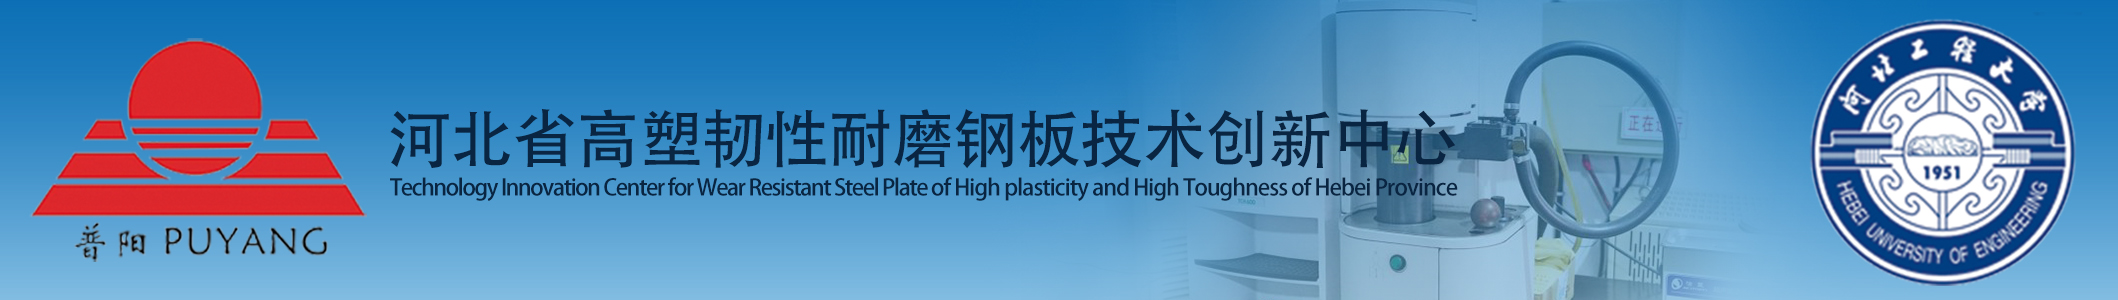 河北省高塑韧性耐磨钢板技术创新中心